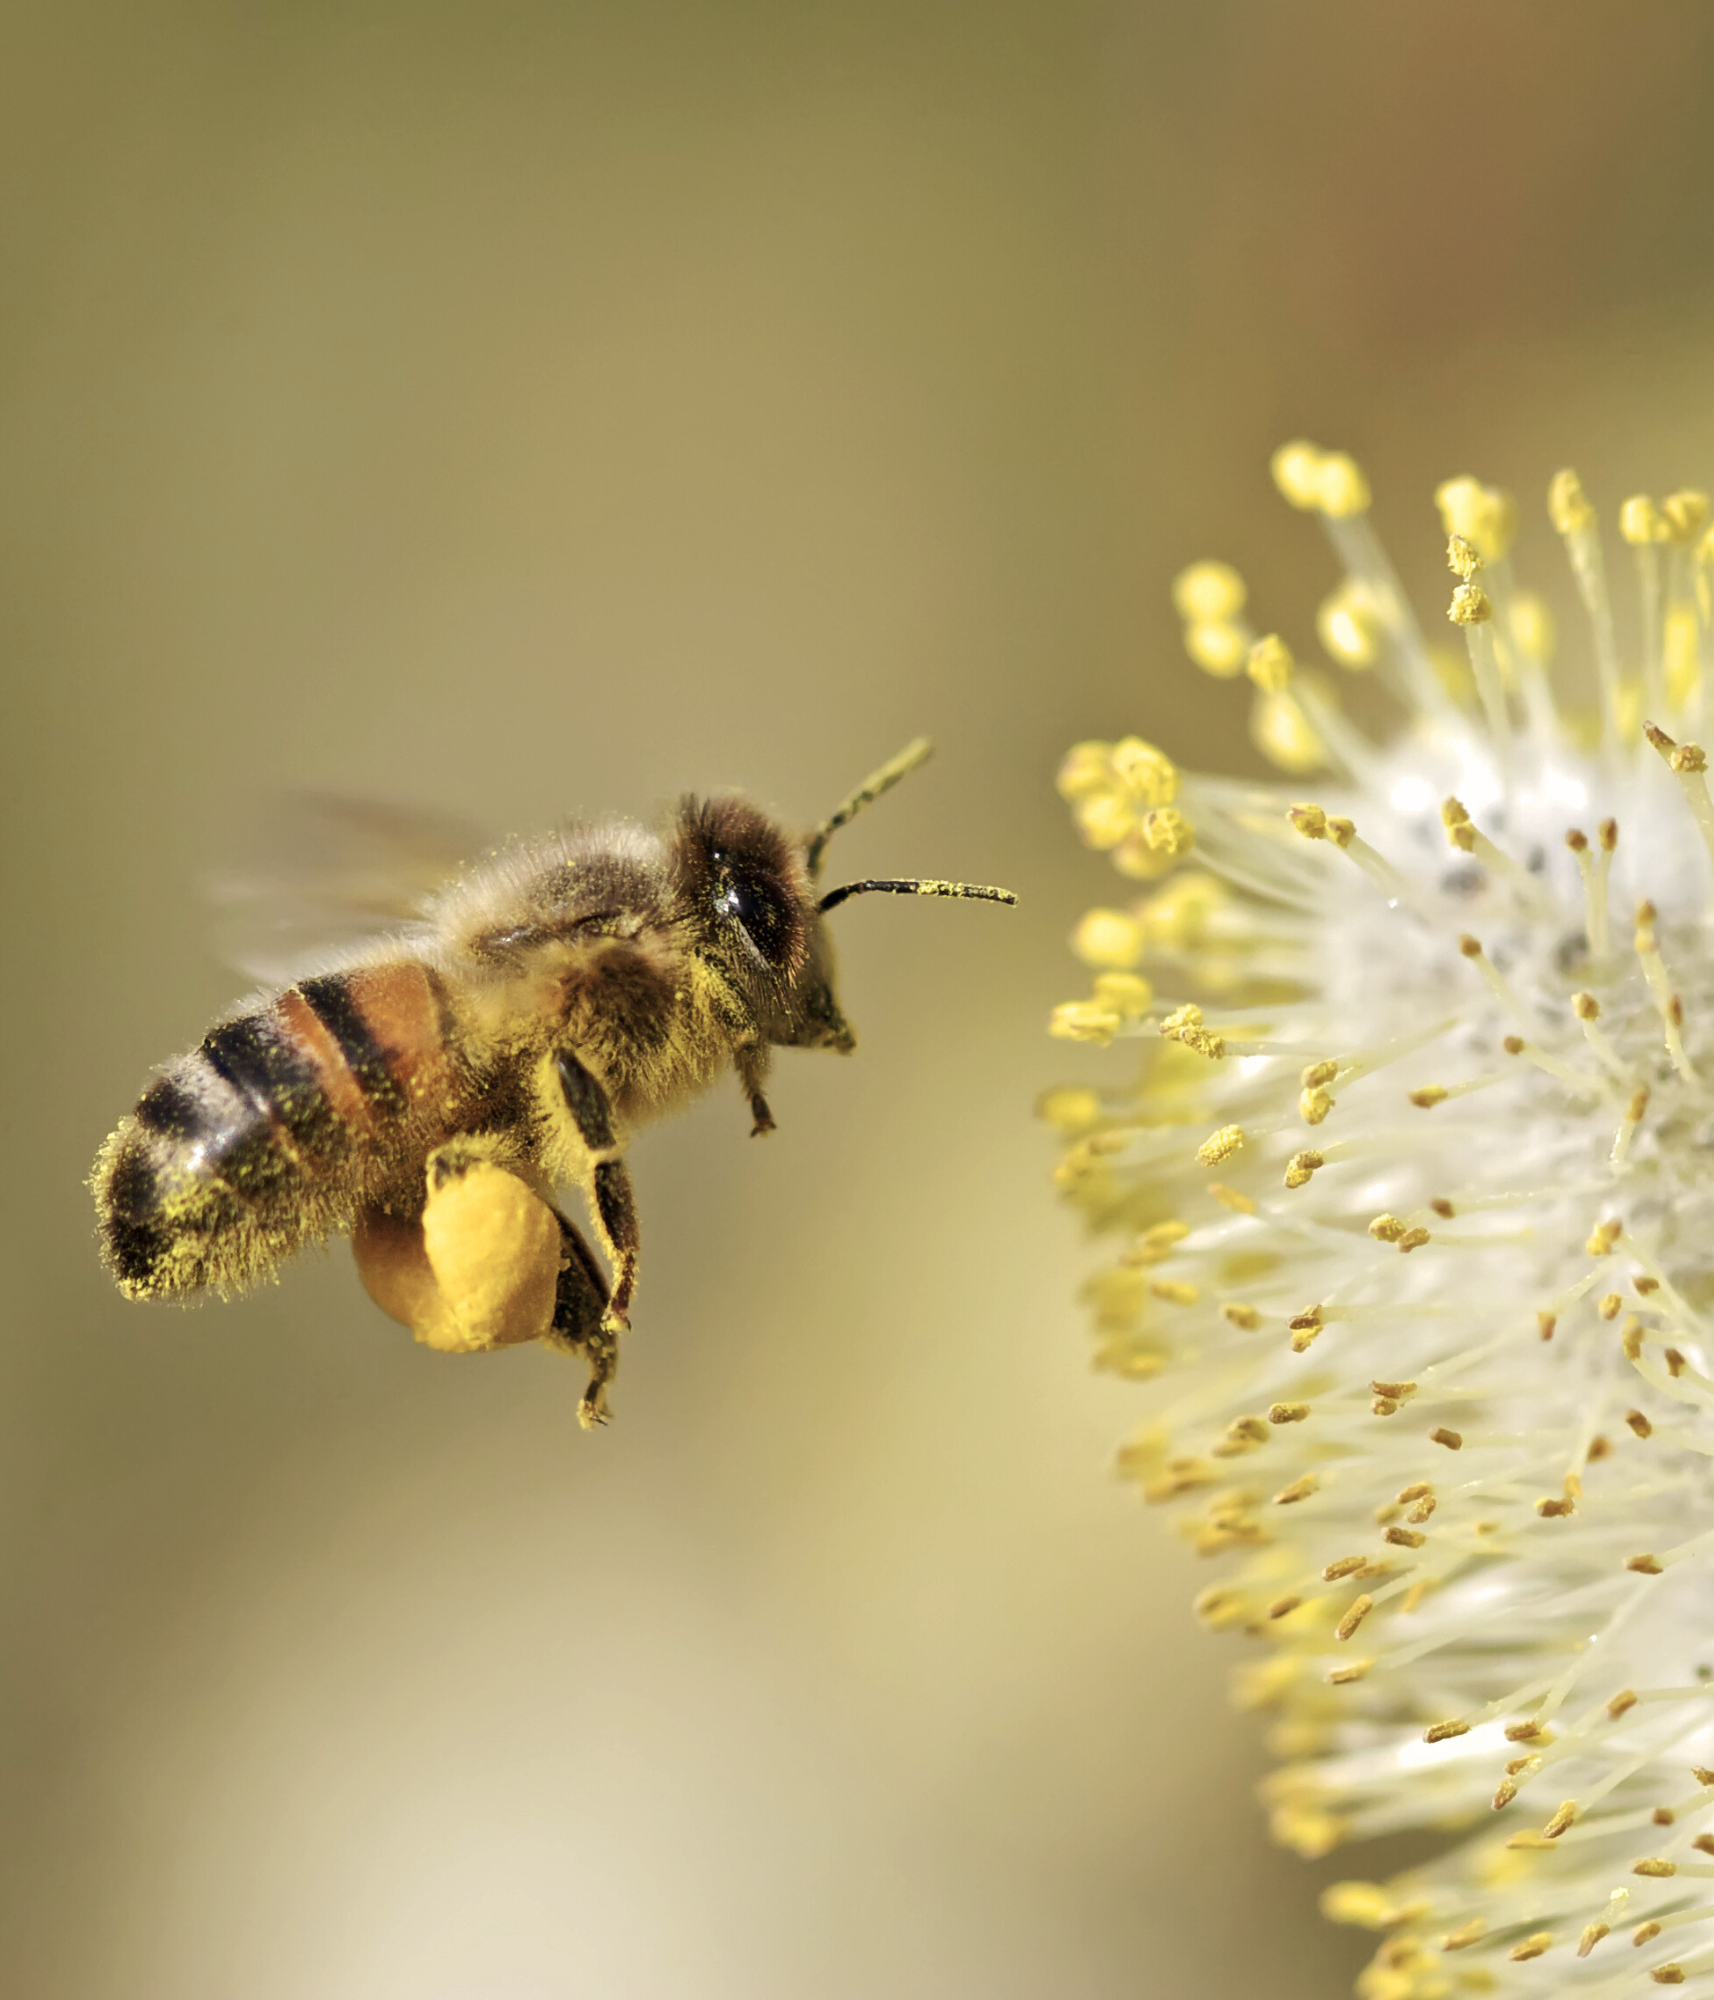 Abeille portant des pelotes de pollen à l'arrière, s'approchant d'une fleur pour butiner.